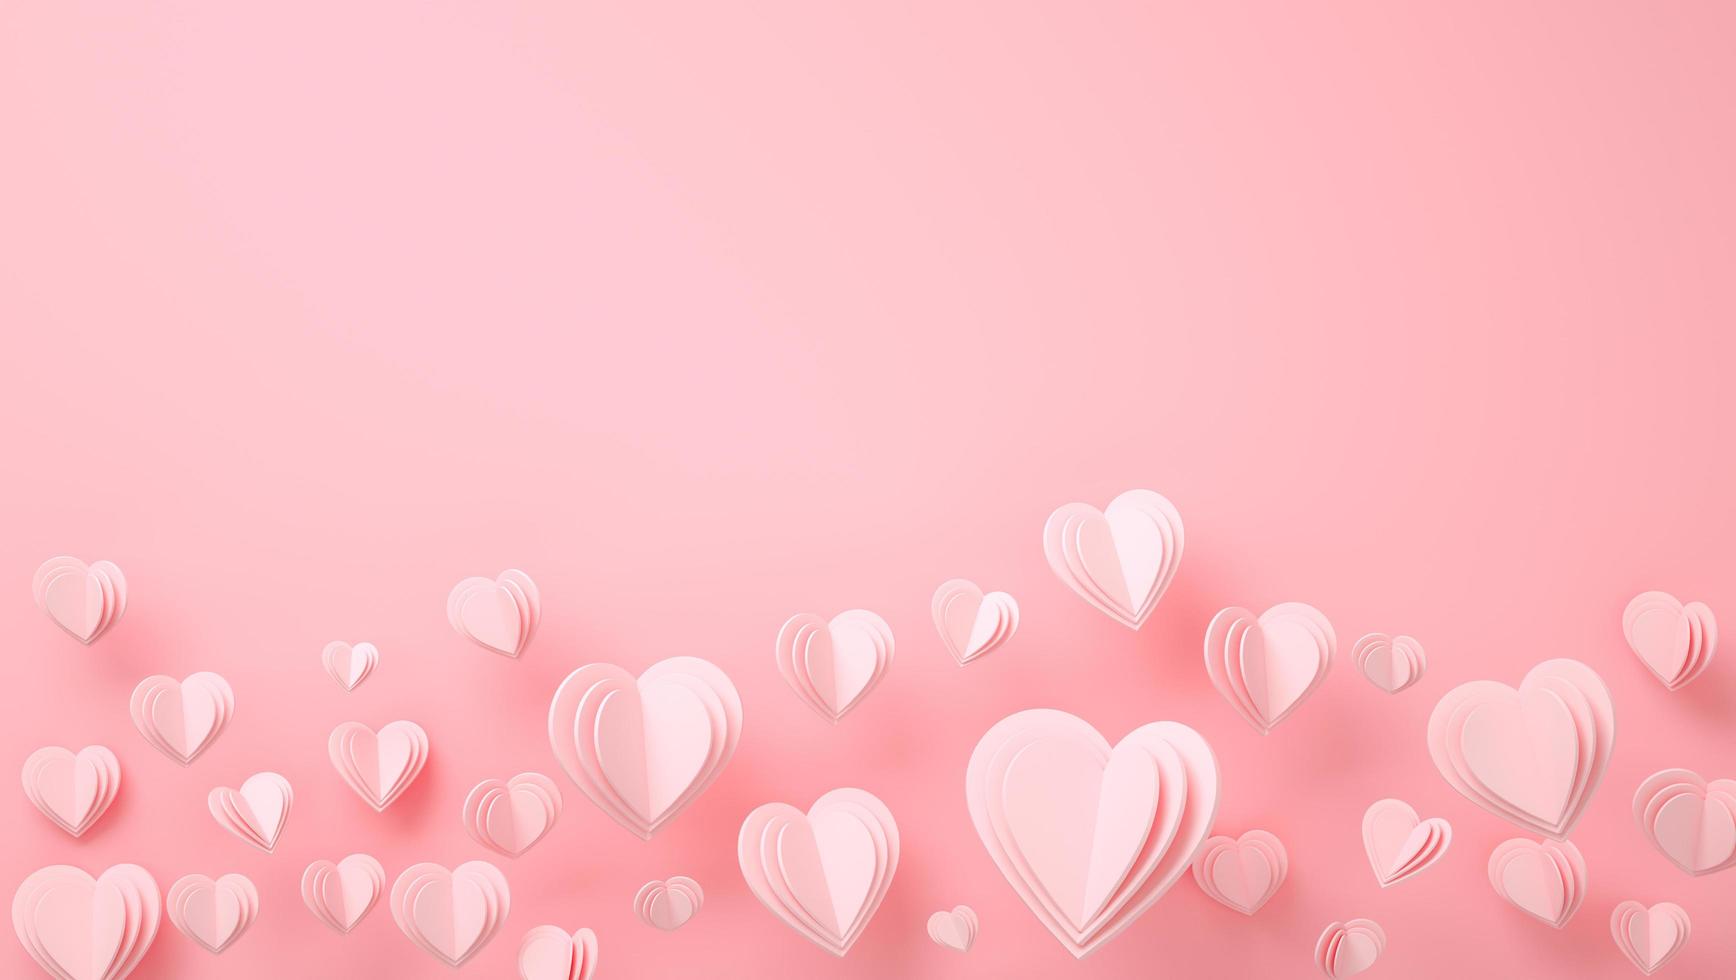 corazones de papel día de san valentín - 3d render tarjeta romántica - fondo, amor, san valentín, boda foto